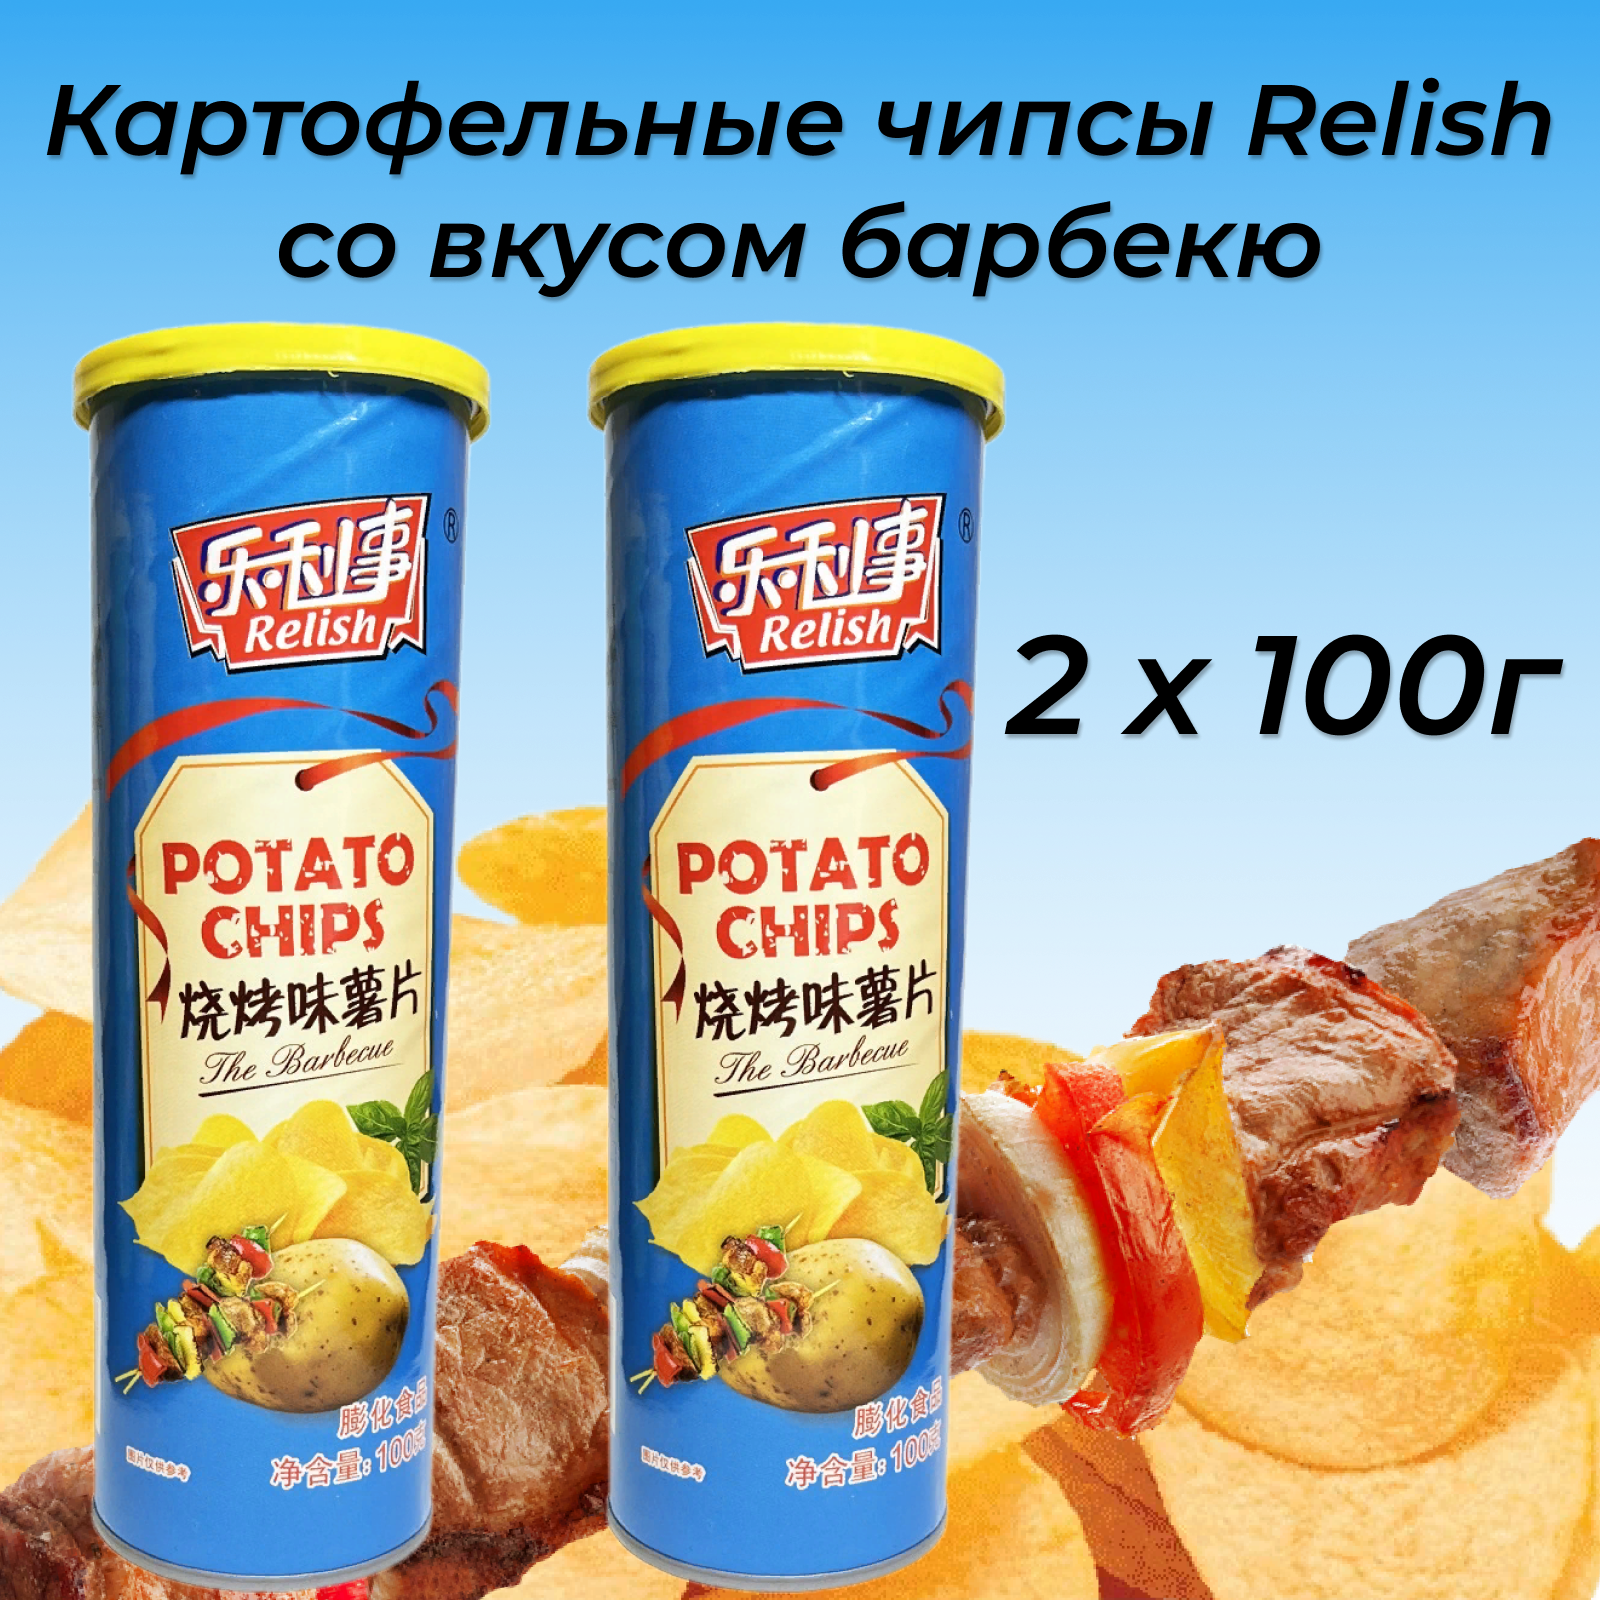 Чипсы картофельные Relish со вкусом барбекю 2 х 100г. Китай